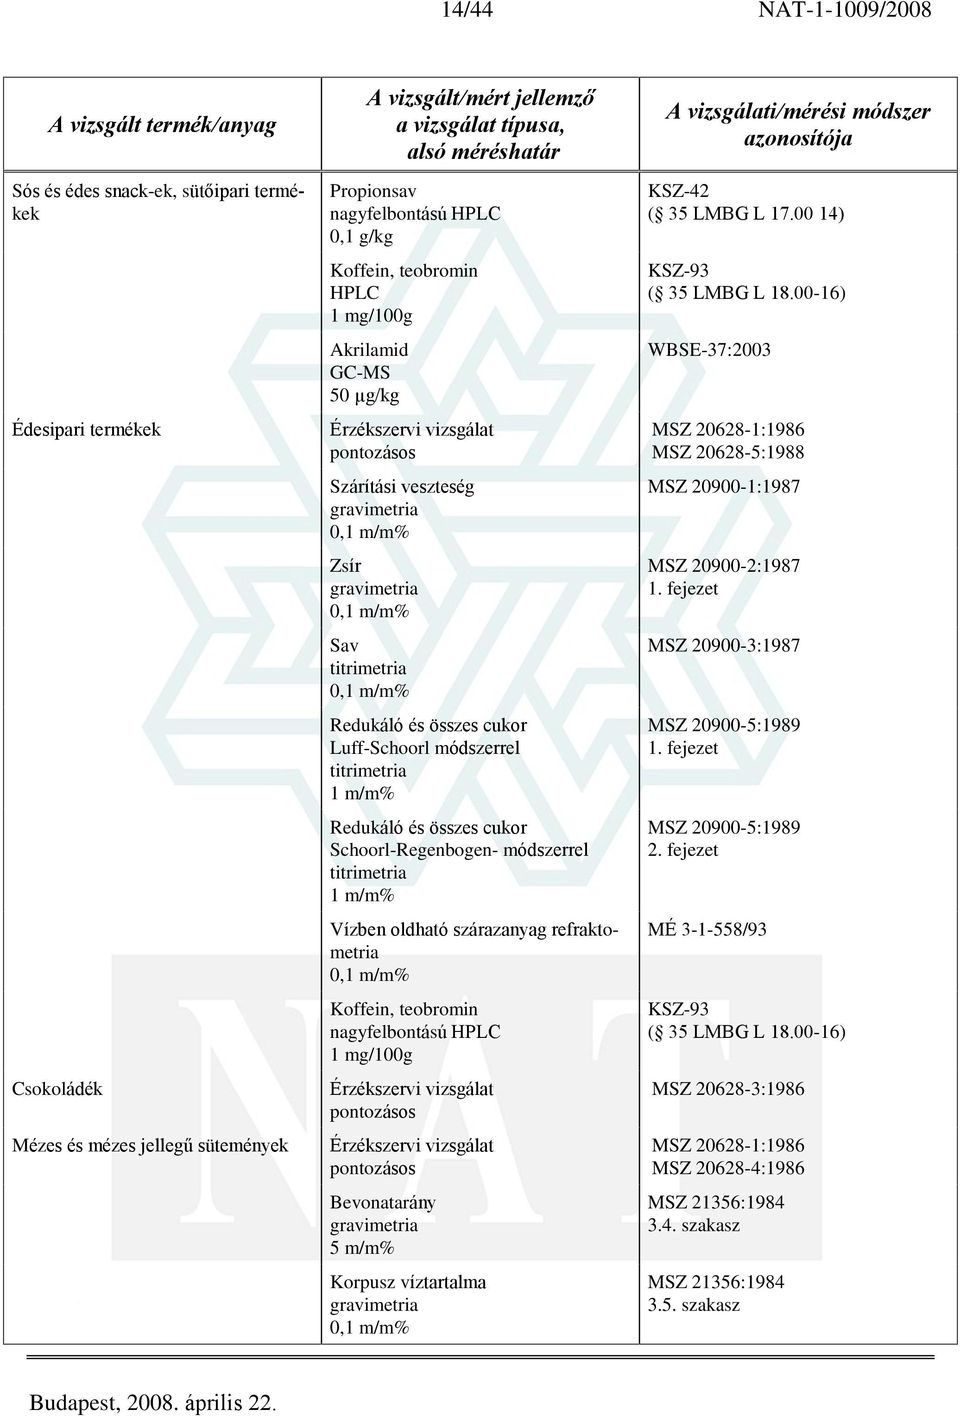 refraktometria Koffein, teobromin nagyfelbontású 1 mg/100g Bevonatarány 5 m/m% Korpusz víztartalma KSZ-42 ( 35 LMBG L 17.00 14) KSZ-93 ( 35 LMBG L 18.